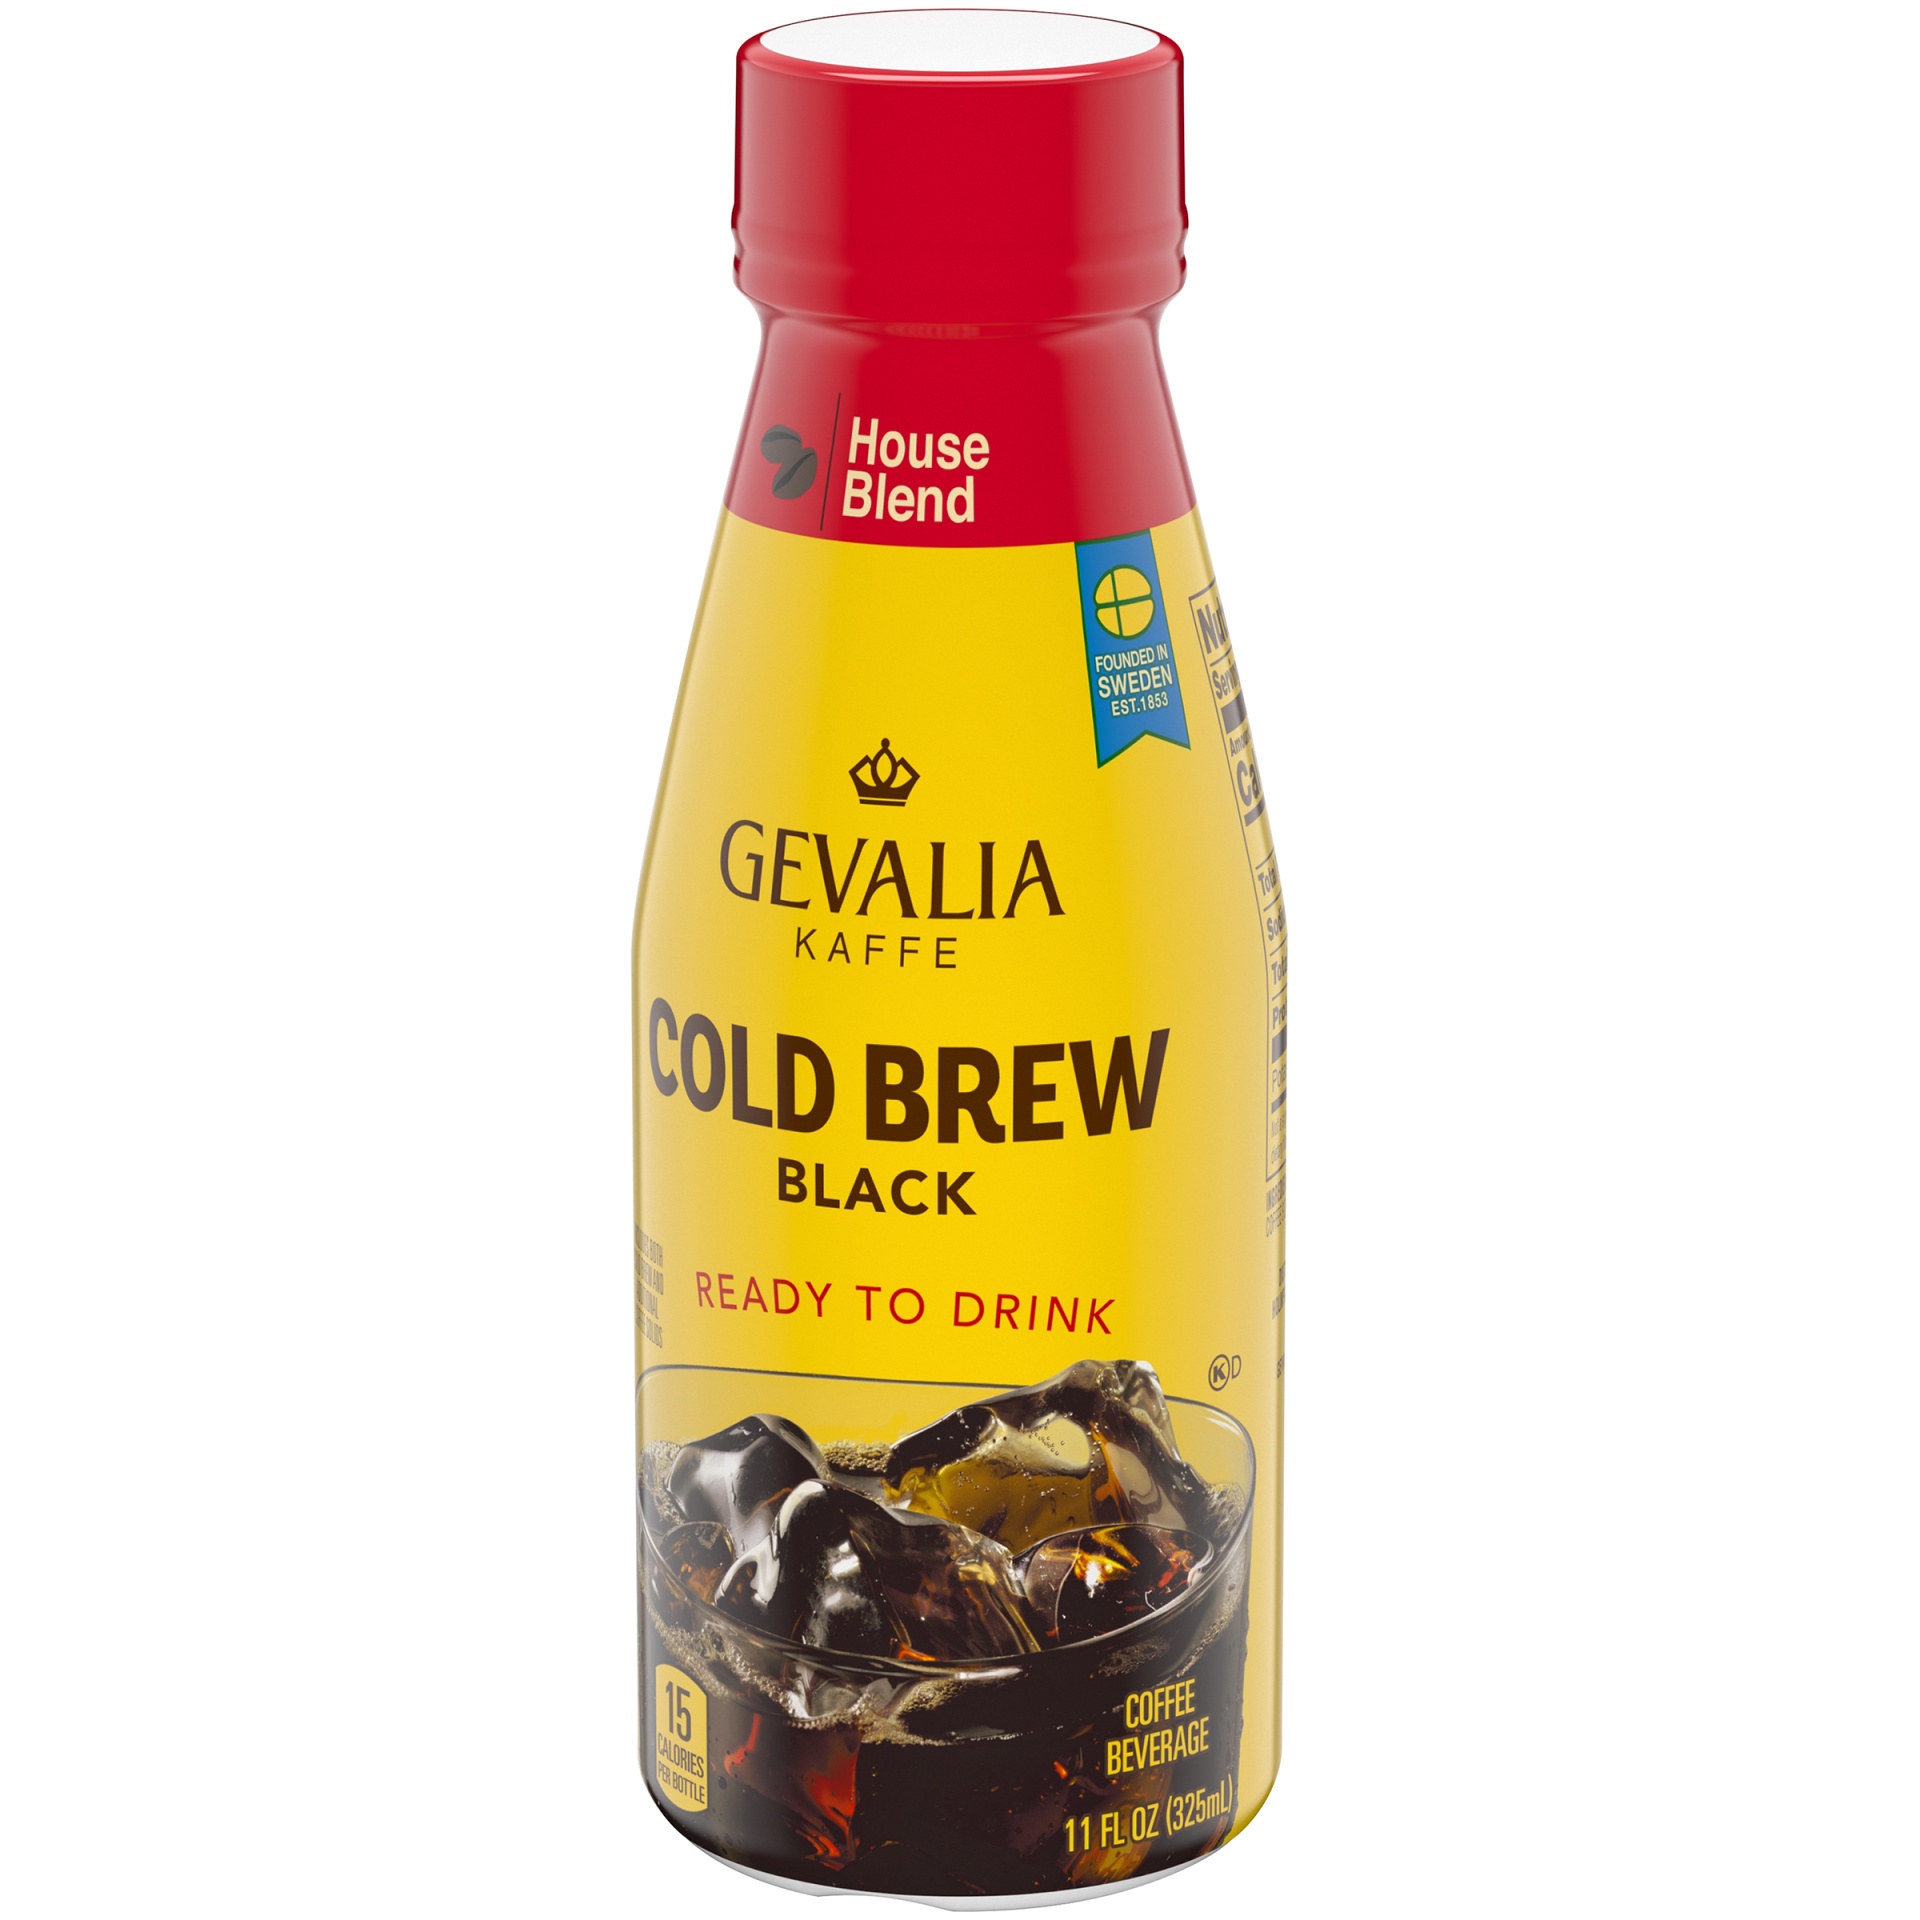 slide 3 of 6, Gevalia Cold Brew House Blend Black Ready To Drink Coffee Beverage Bottle, 11 fl oz